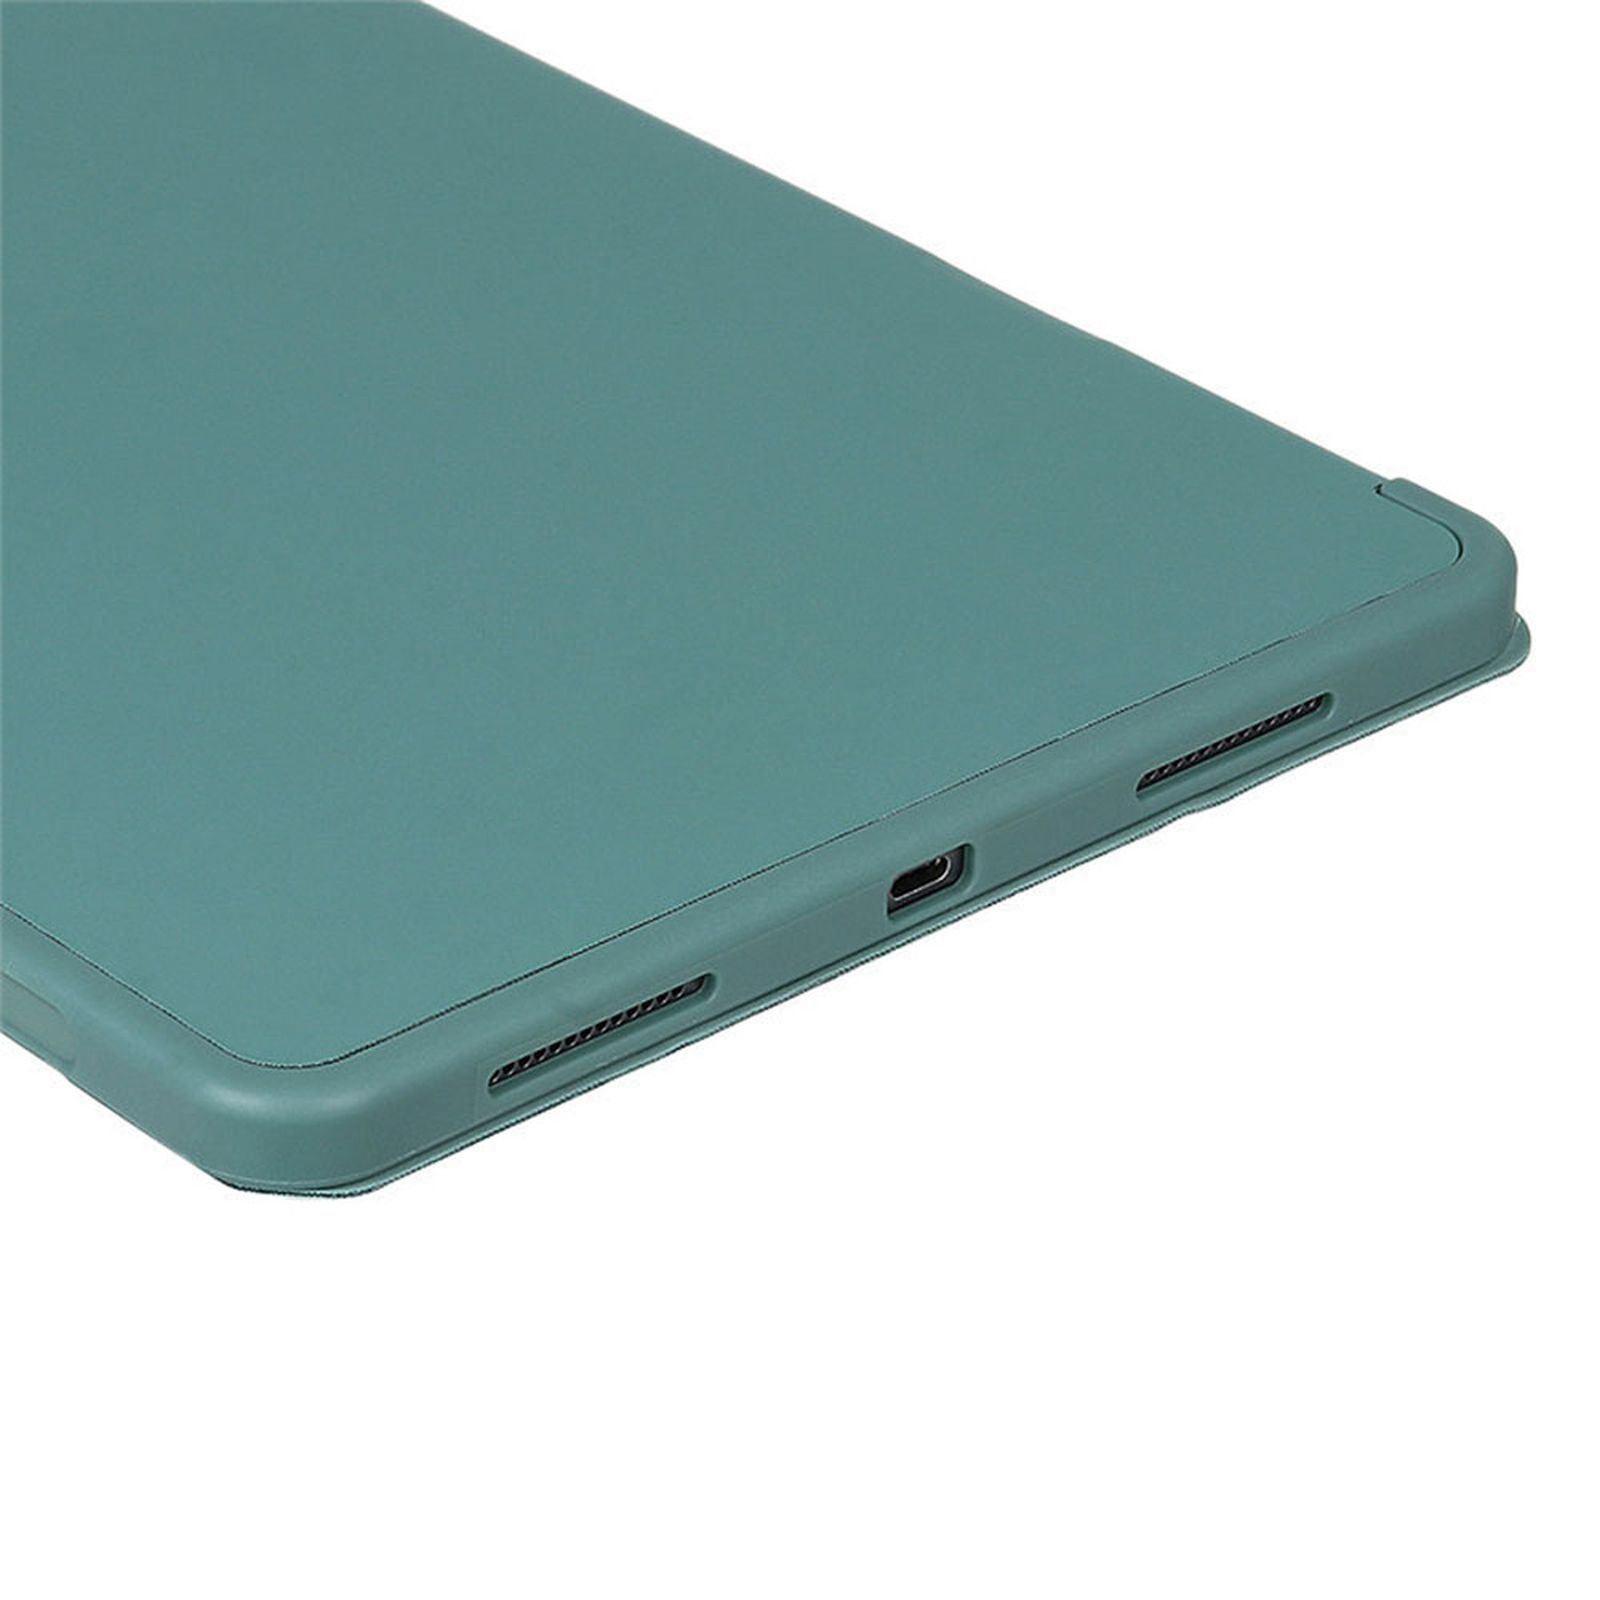 Pro Hülle Grün iPad Bookcover für LOBWERK Kunststoff, 2020 12.9 Schutzhülle Apple